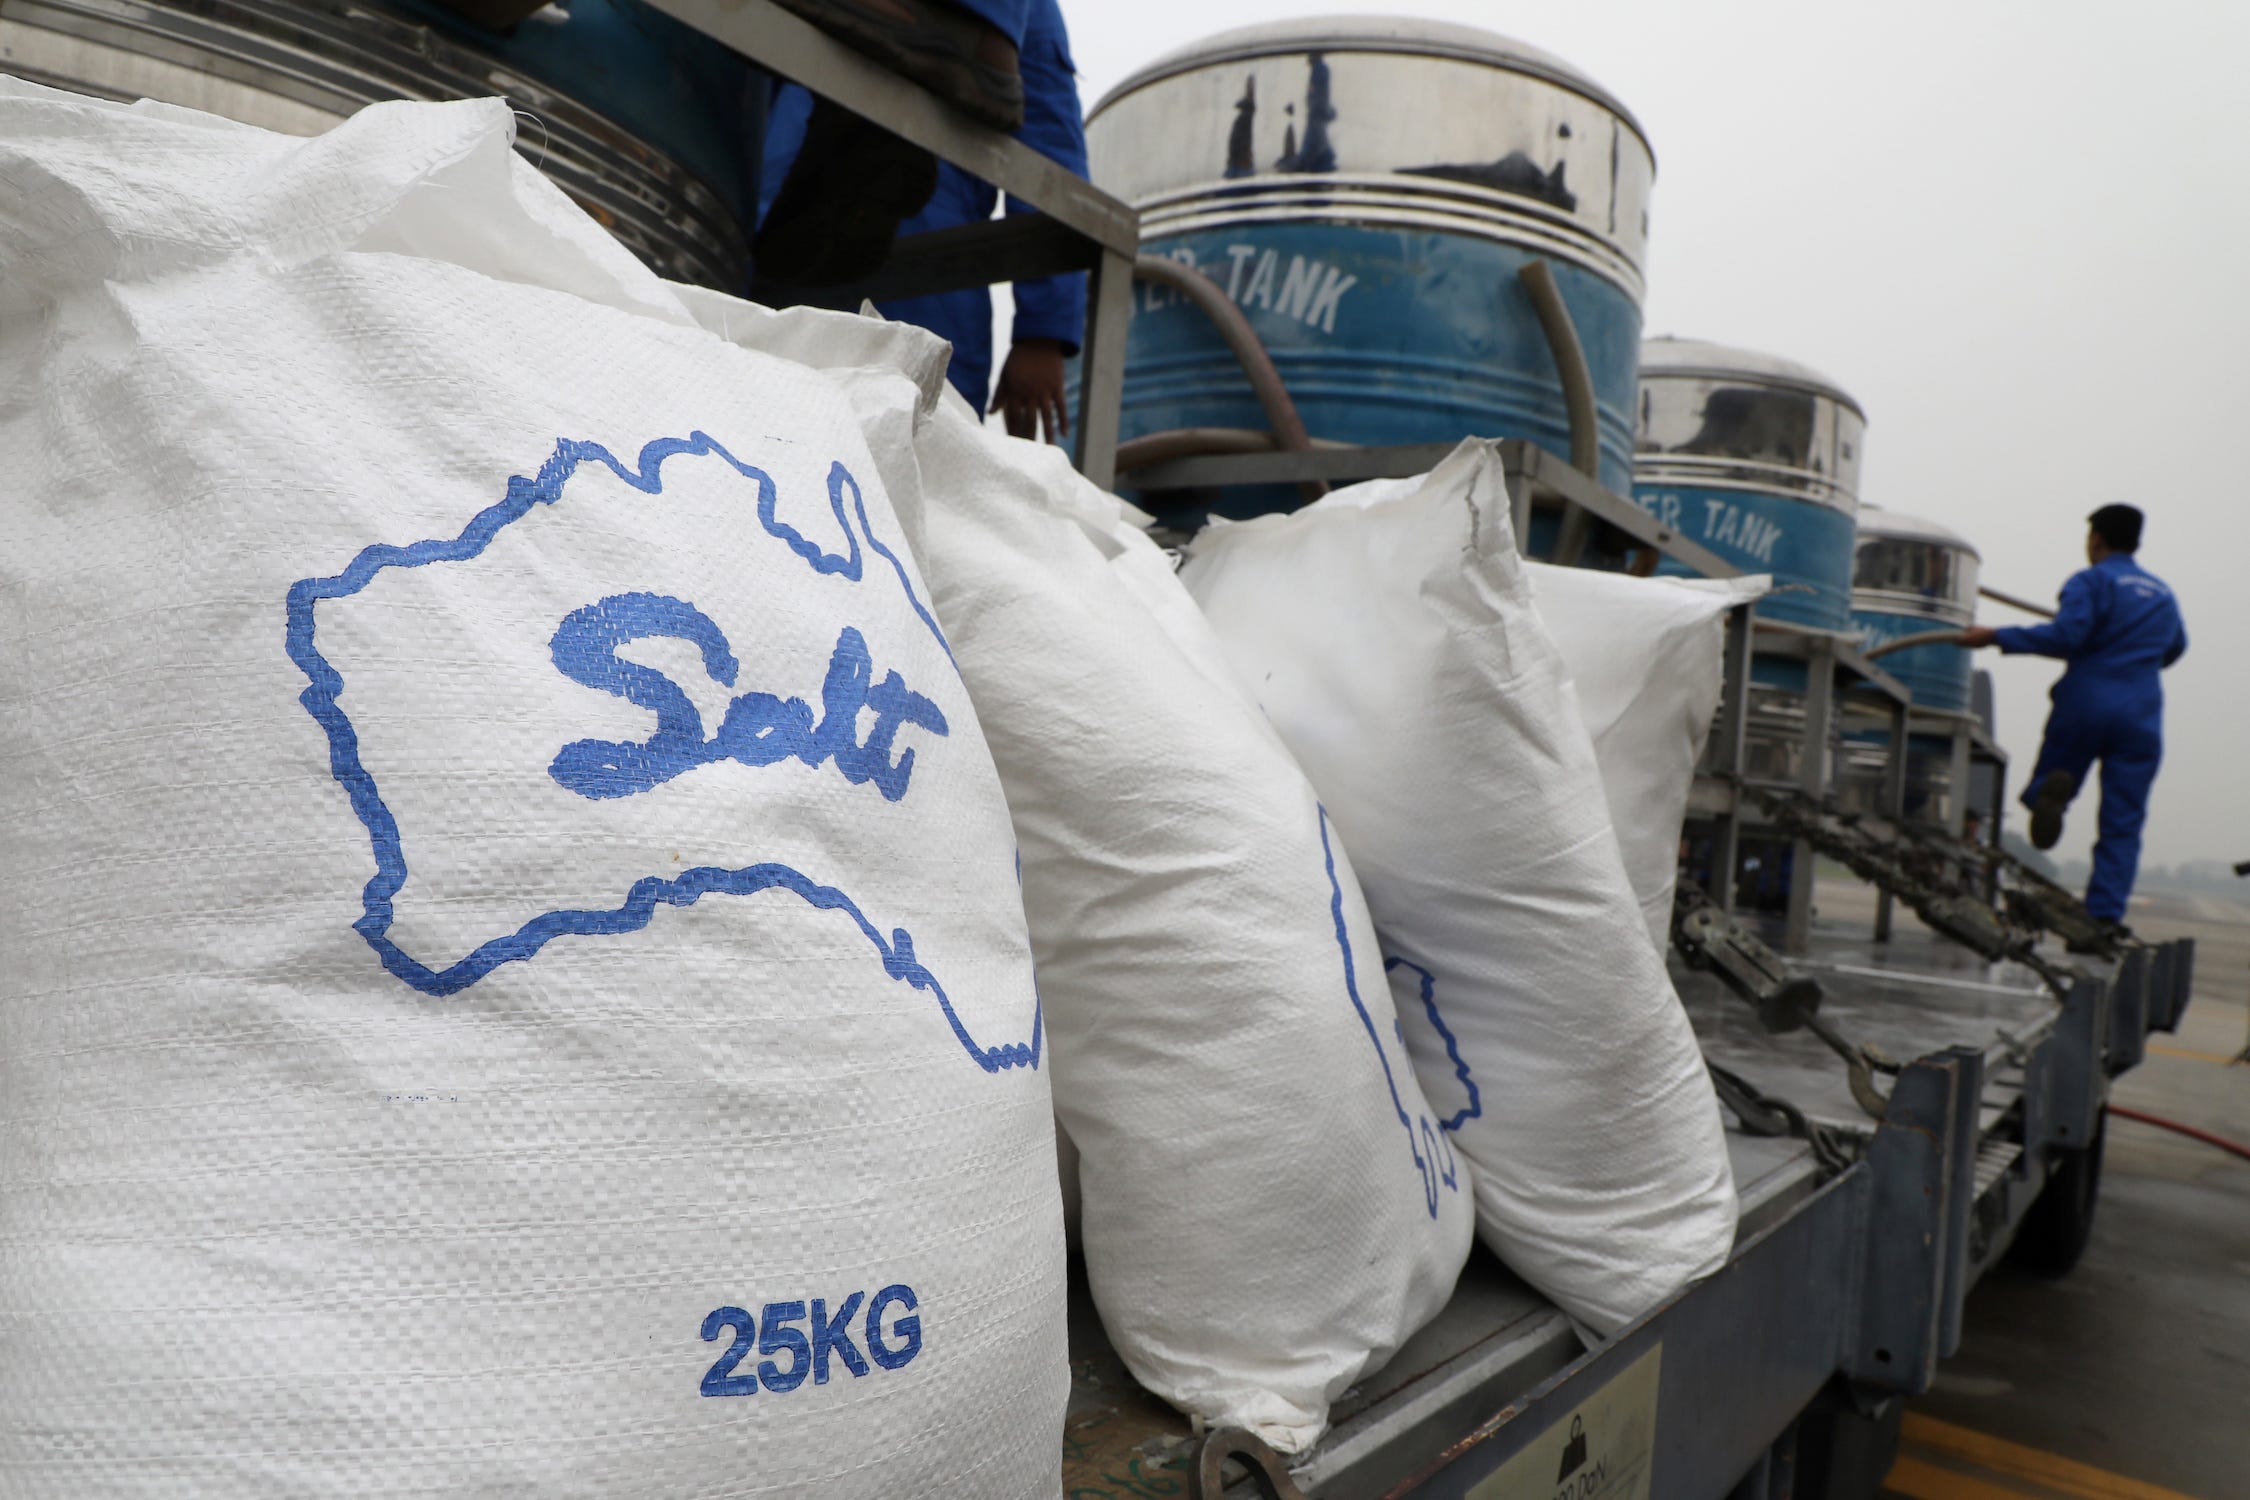 Weiße Säcke mit der Aufschrift „Salz 25 kg“ reihen sich auf einer langen LKW-Ladefläche aus Metall auf, auf der blaue und silberne Tanks stehen